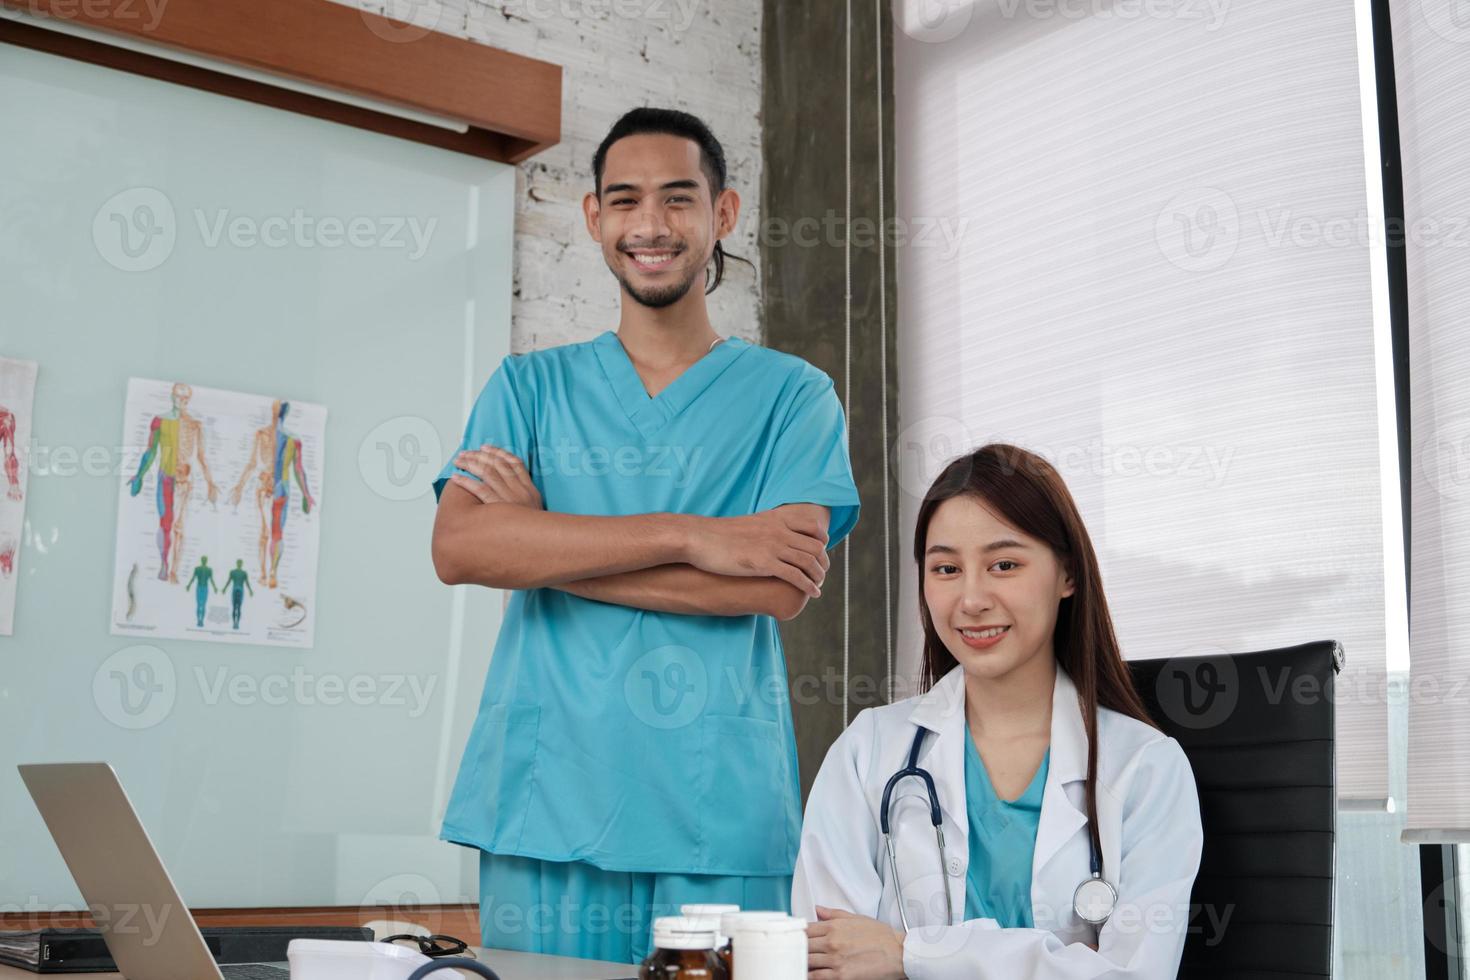 Gesundheitspartnerteam, Porträt von zwei jungen Ärzten asiatischer ethnischer Zugehörigkeit in Uniform mit Stethoskop, Lächeln und Blick in die Kamera in der Klinik, Personen, die sich mit professioneller Behandlung auskennen. foto